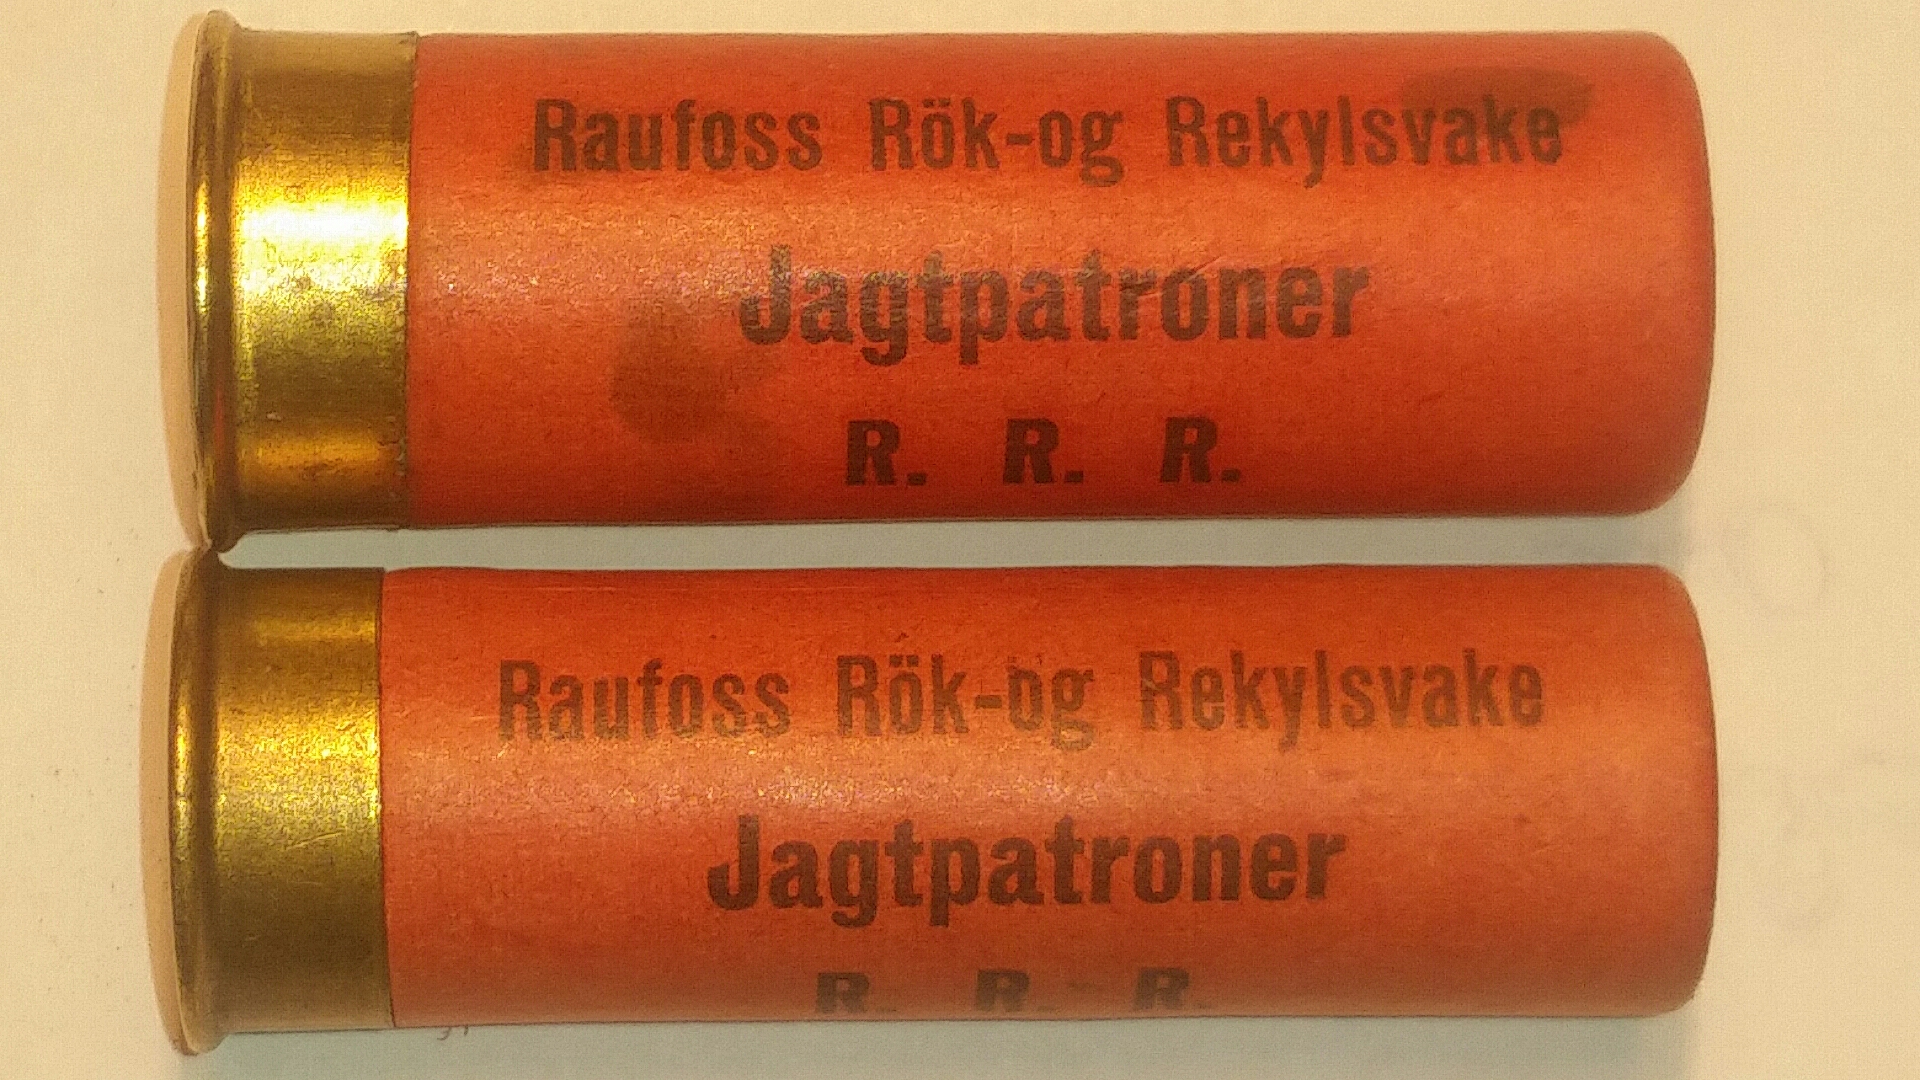 ./ammo/hagle/patroner/Patron-Hagle-Raufoss-Royk-og-Rekylsvake-Jagtpatroner-16-12-65-1.jpg